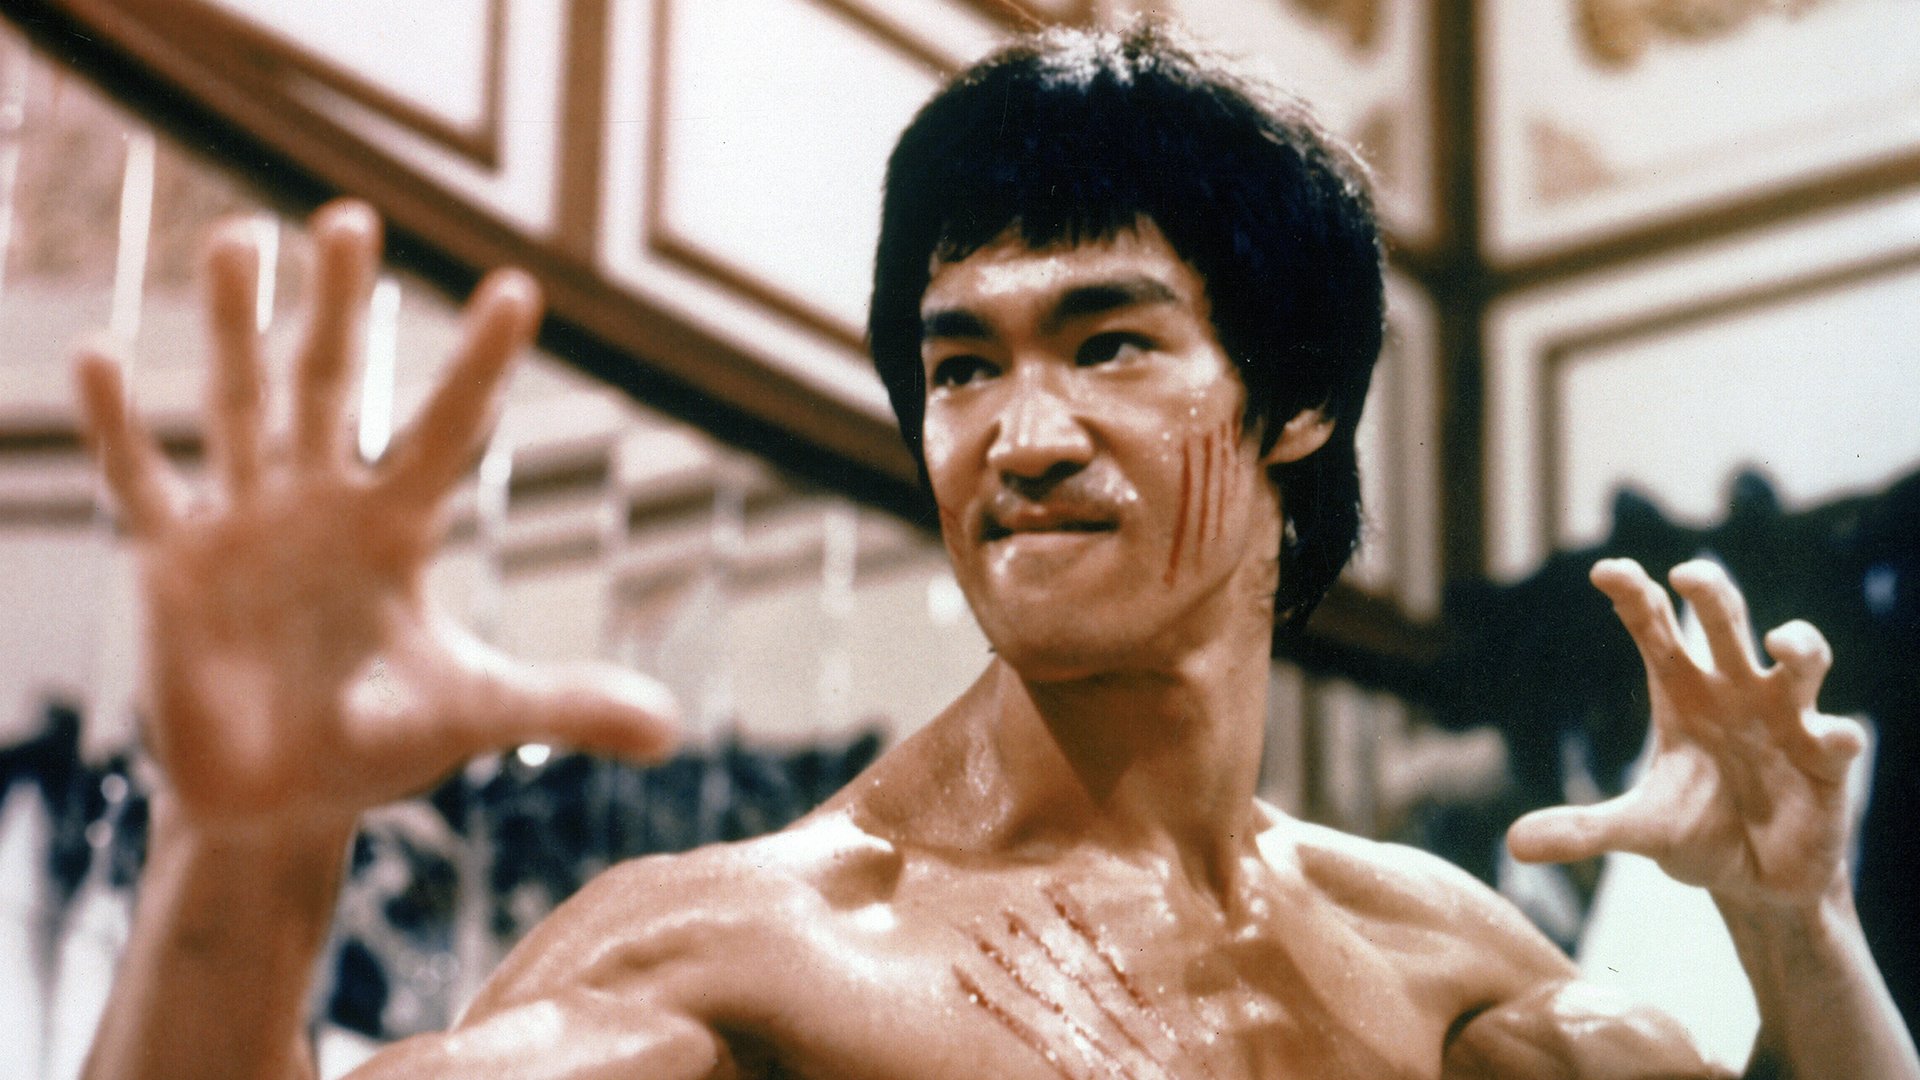 #Bruce-Lee-Serie: Erster Trailer zum Projekt von der Tochter des legendären Kampfkünstlers erschienen